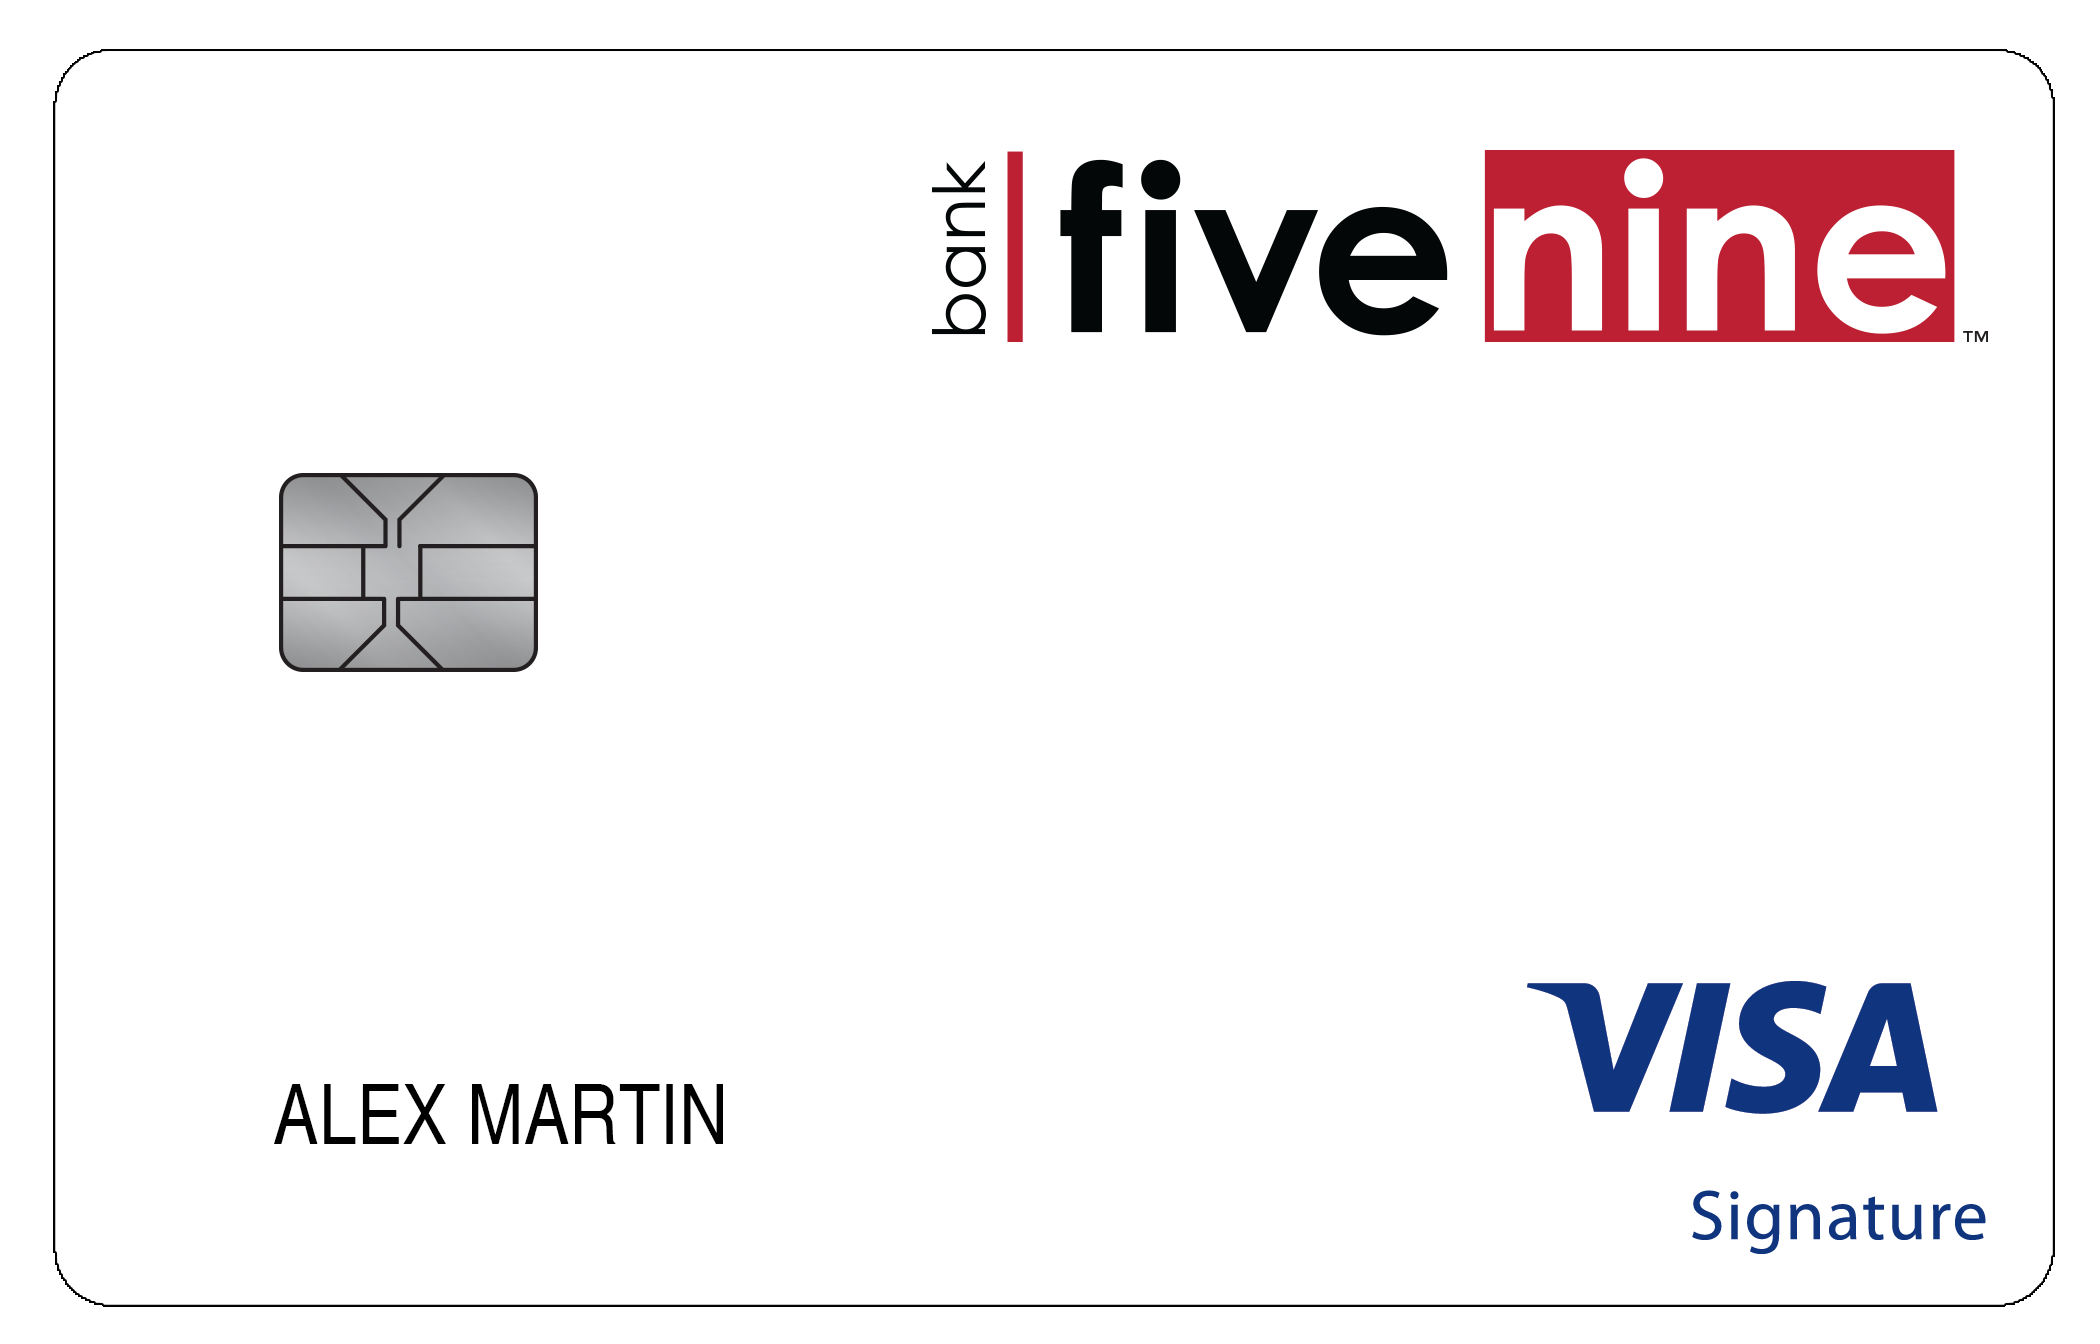 Bank Five Nine Travel Rewards+ Card